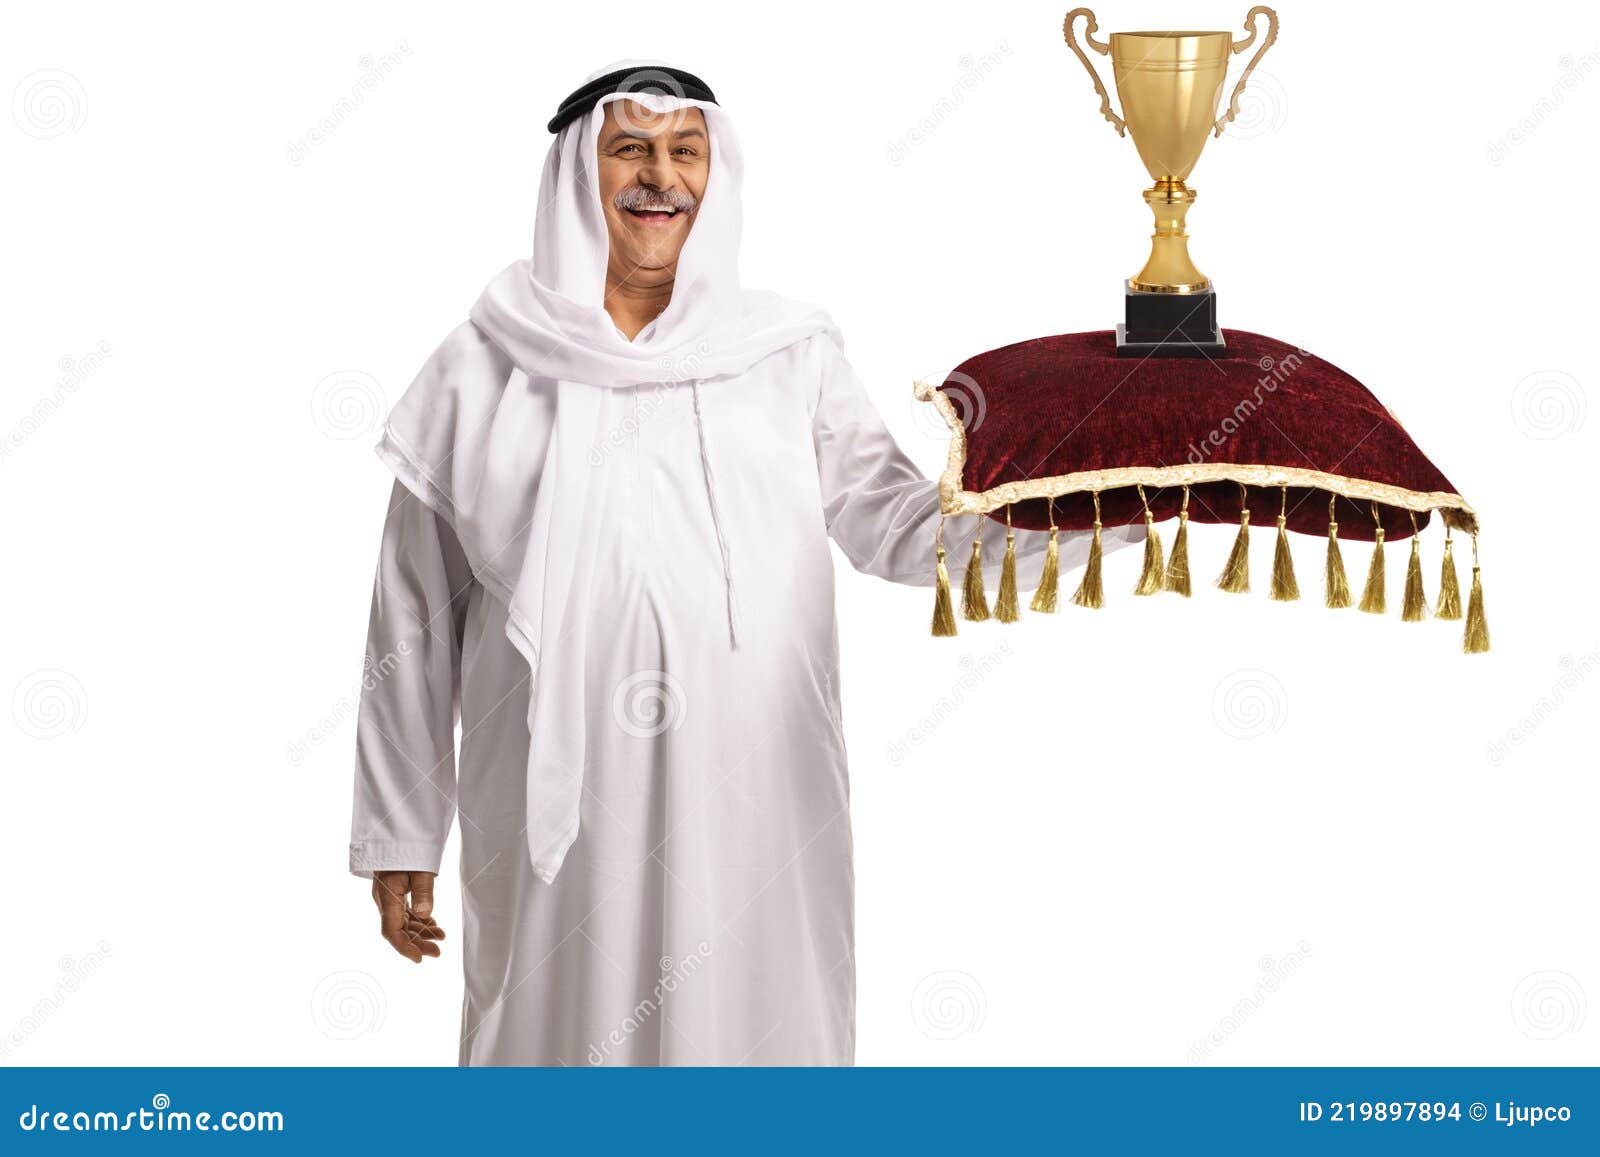 盯着相机的性感阿拉伯男人 库存图片. 图片 包括有 迪拜, 头饰, 杆菌, 有吸引力的, 伊斯兰, 电话会议 - 157615849